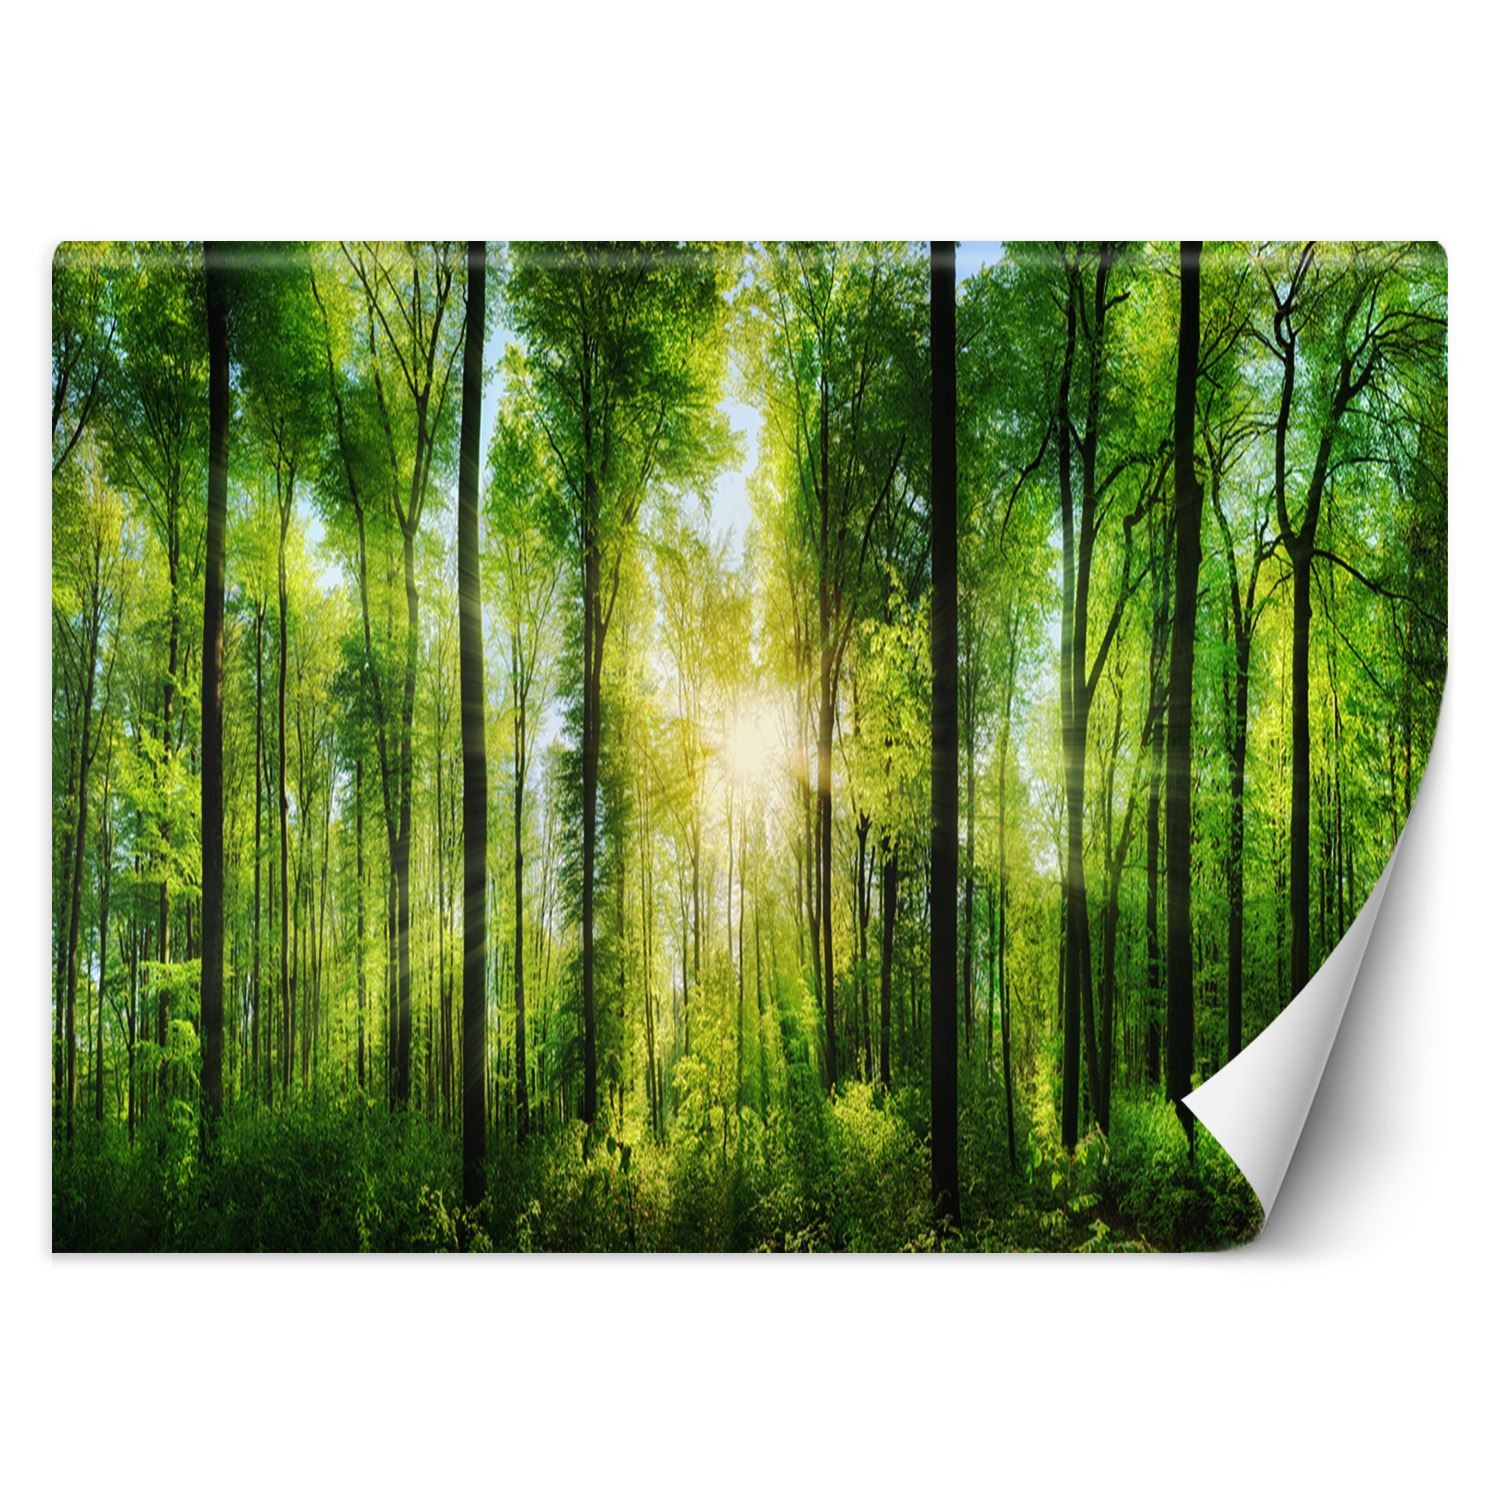 Trend24 – Behang – Zonnestralen In Een Groen Bos – Vliesbehang – Fotobehang Natuur – Behang Woonkamer – 350x245x2 cm – Incl. behanglijm